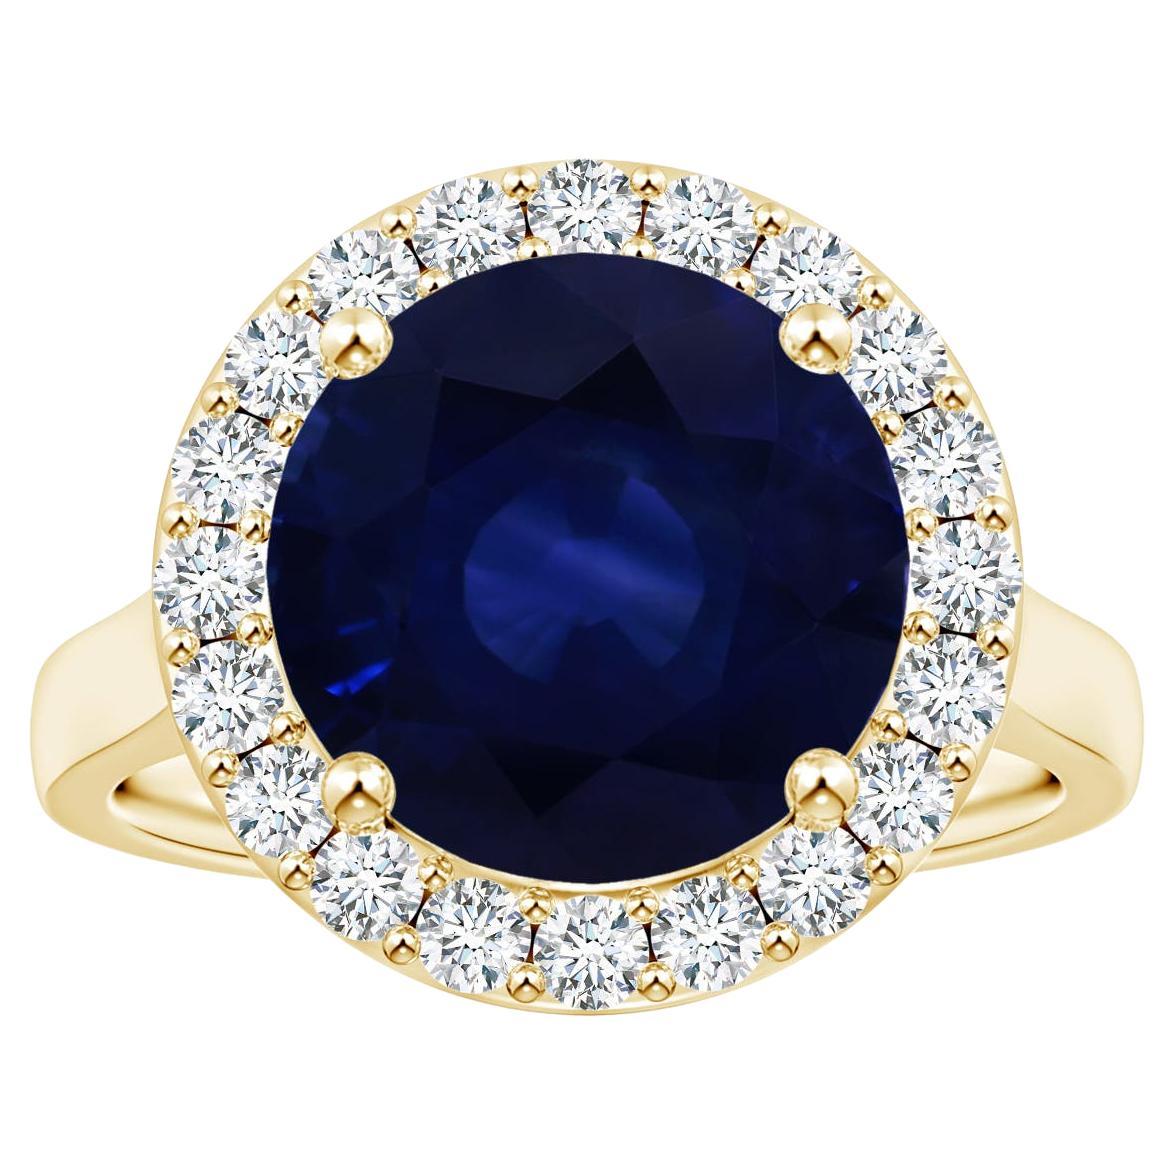 ANGARA Bague en or jaune avec saphir bleu certifié GIA de 6,63 carats et diamants